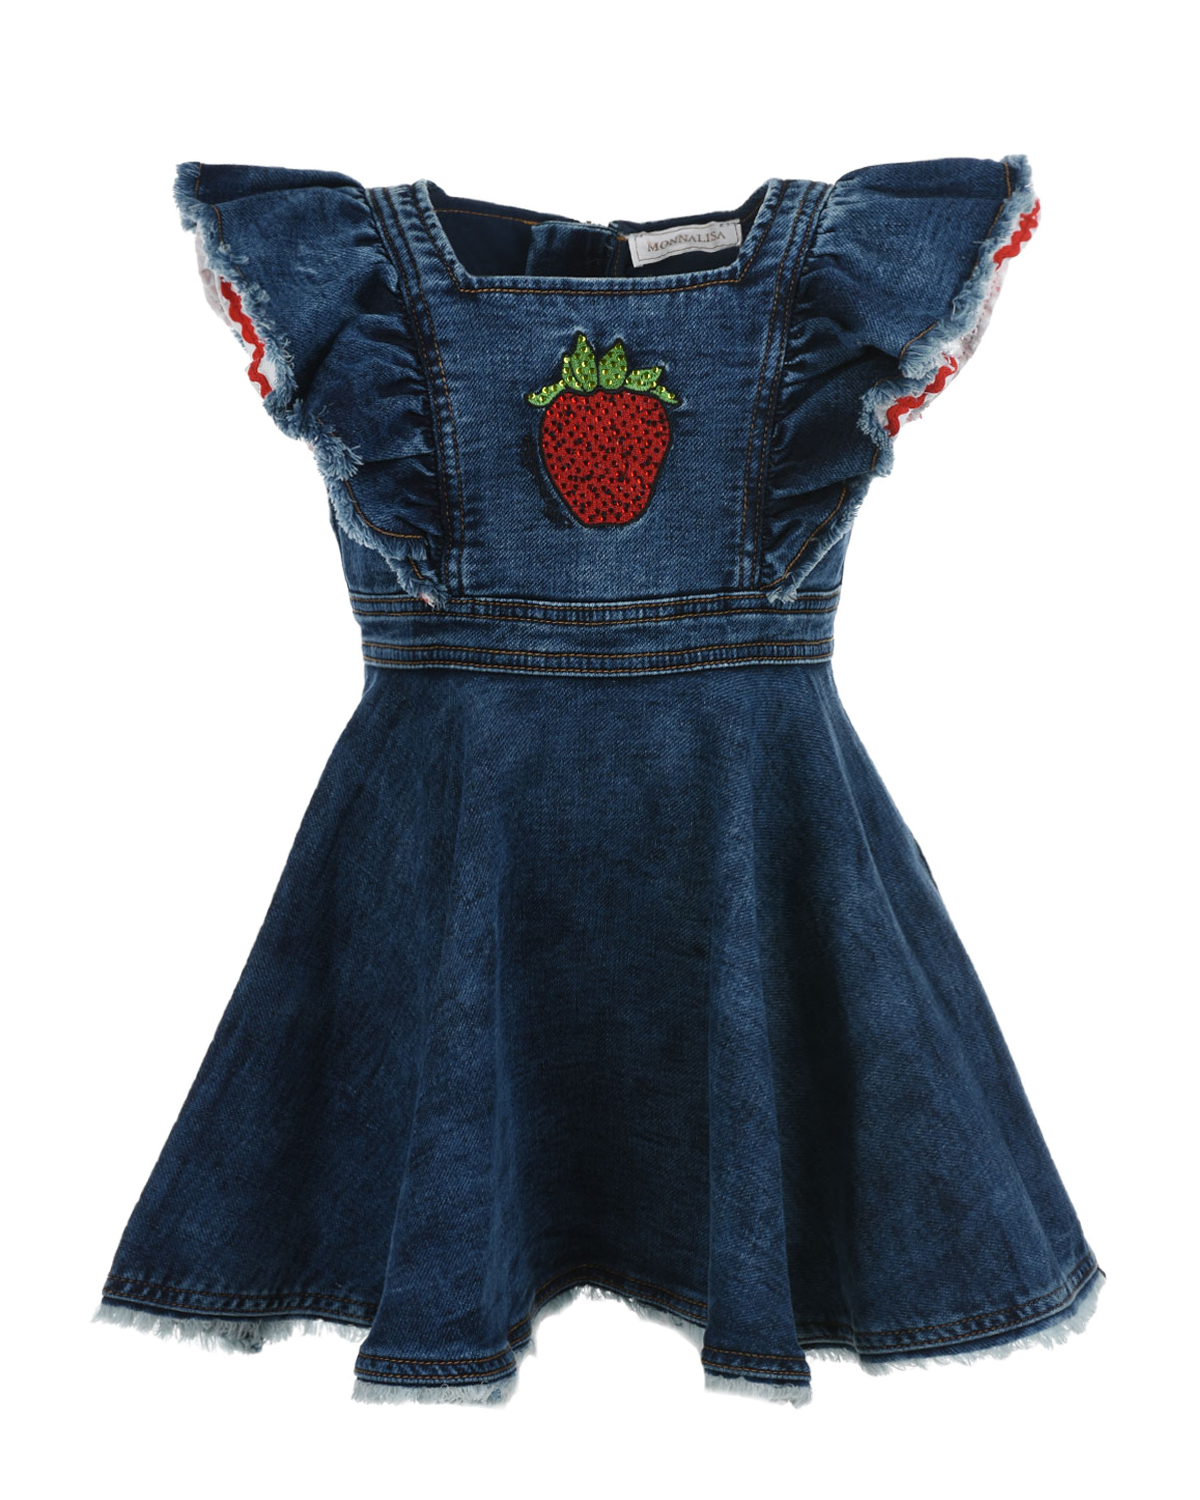 Джинсовое платье с аппликацией "клубника" Monnalisa детское, размер 116, цвет синий - фото 1